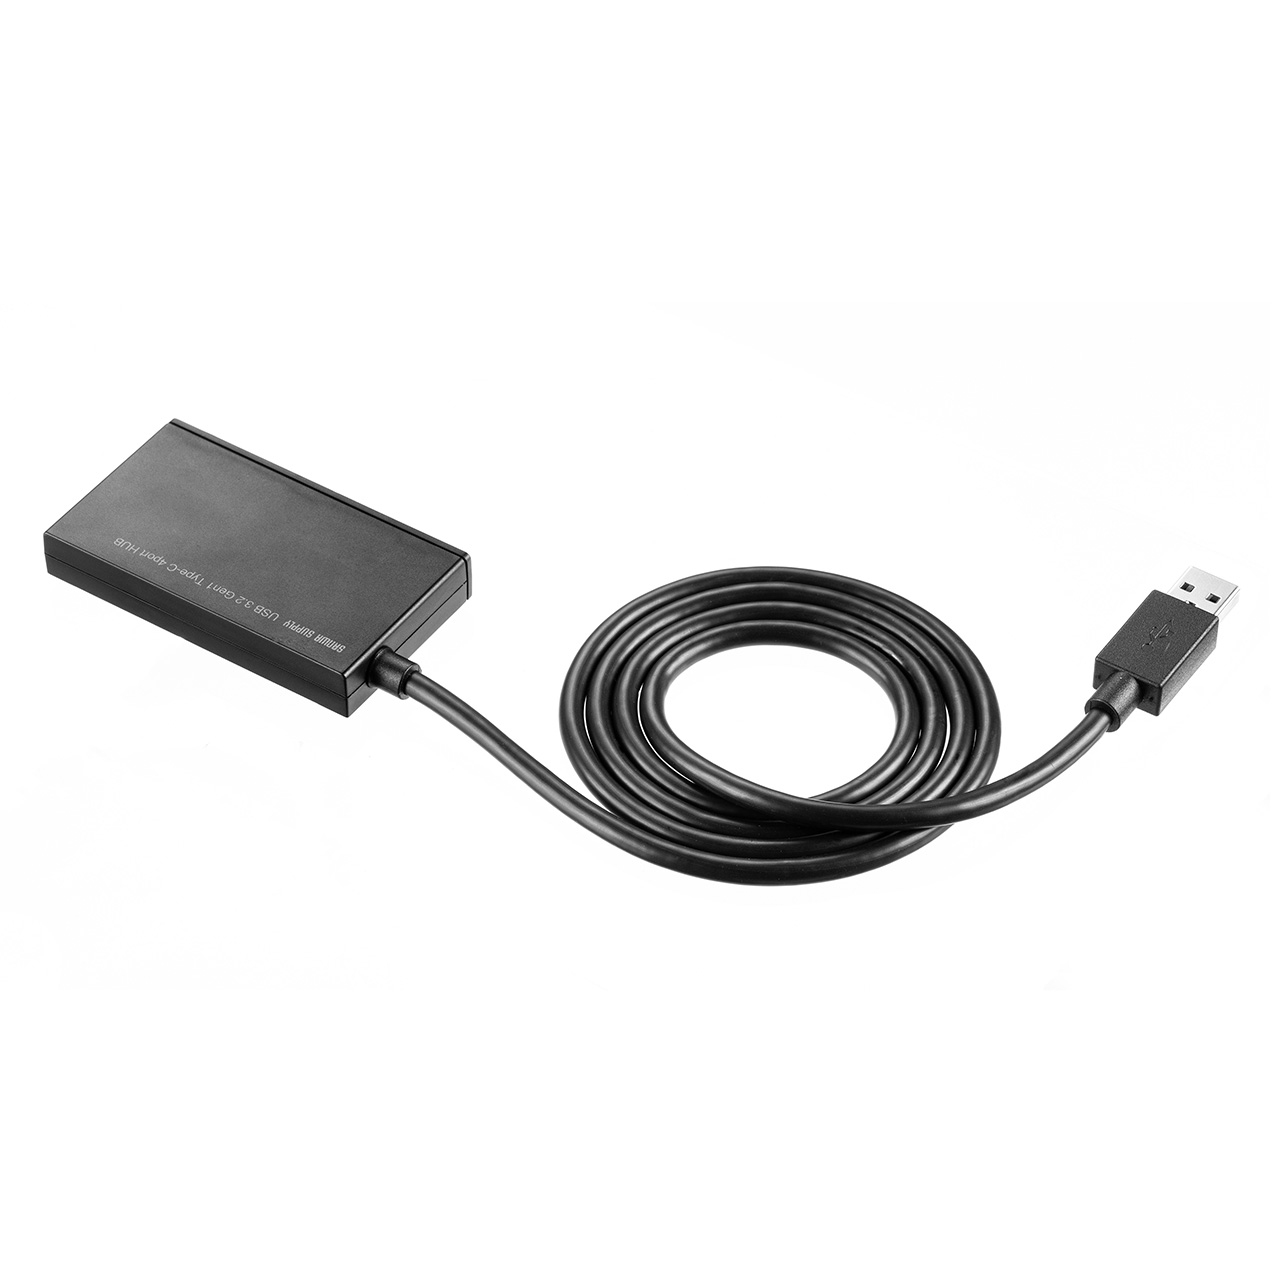 USBnu 4|[g USB-A P[u1m oXp[ ^ y RpNg f[^] 5Gbps 400-HUBA097